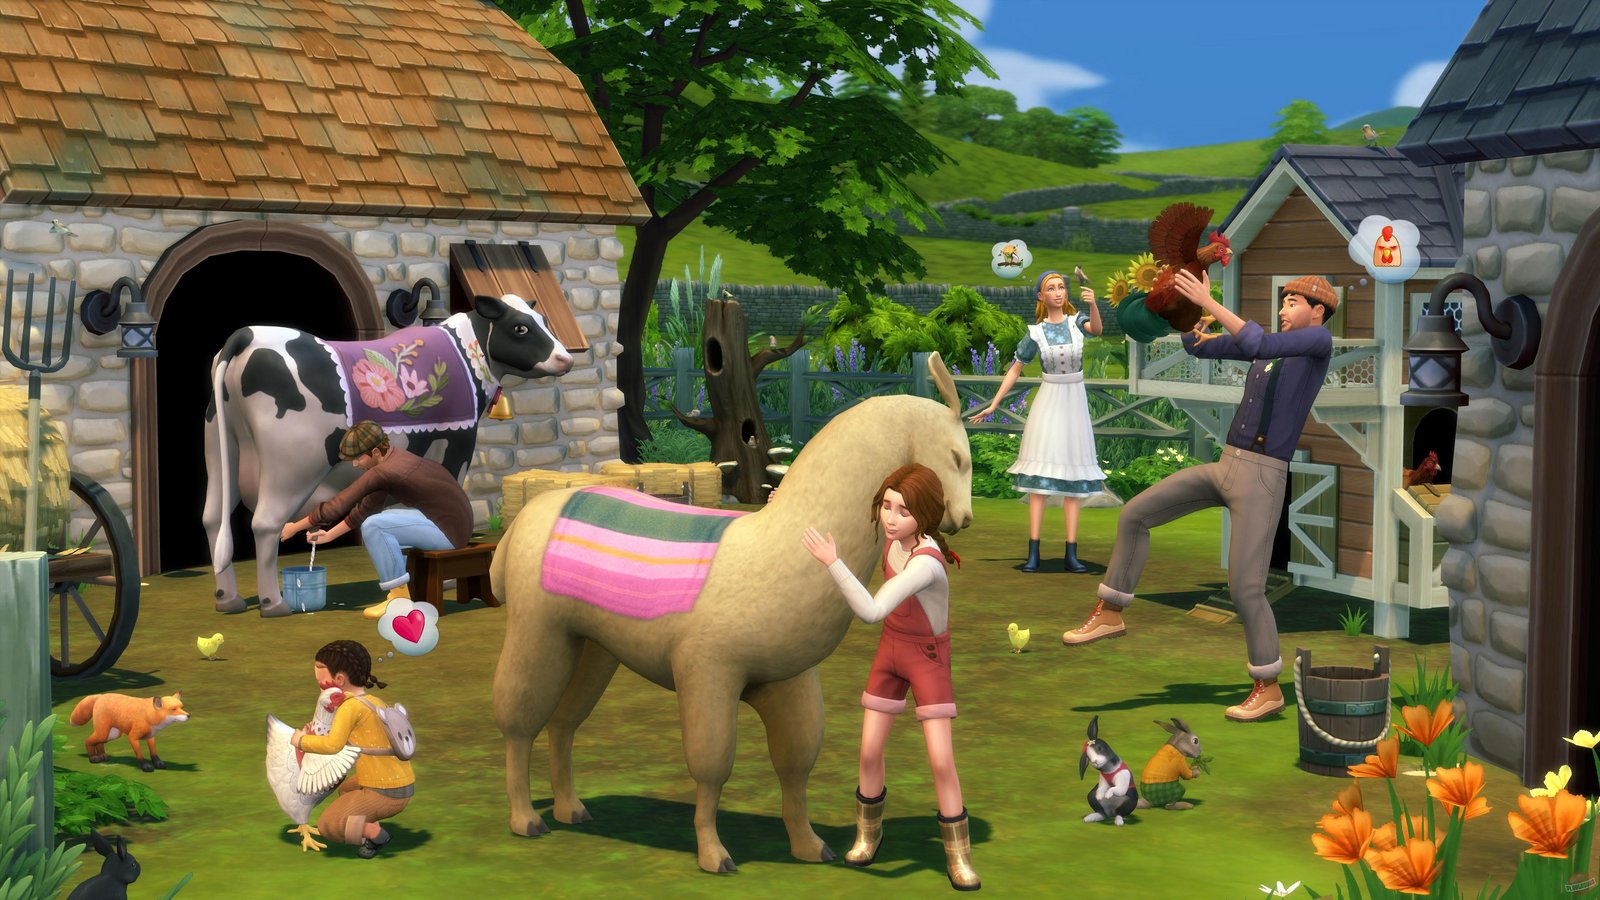 The Sims 4: Modern Menswear